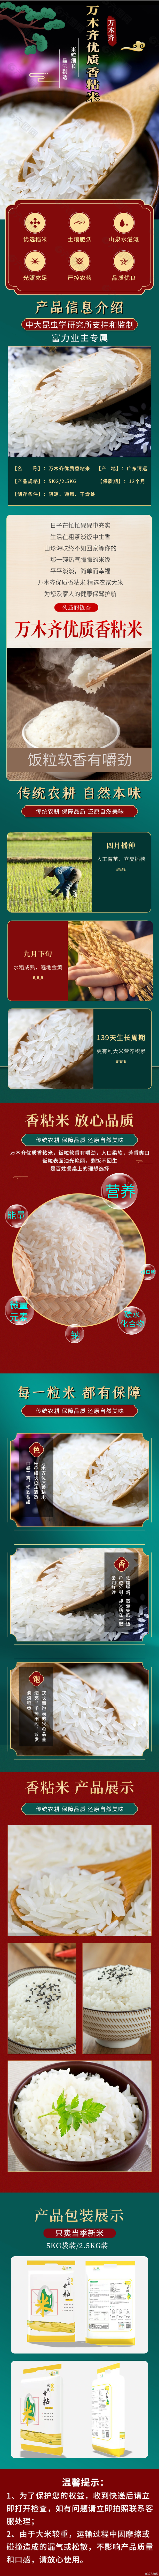 香米油粘米详情页模版